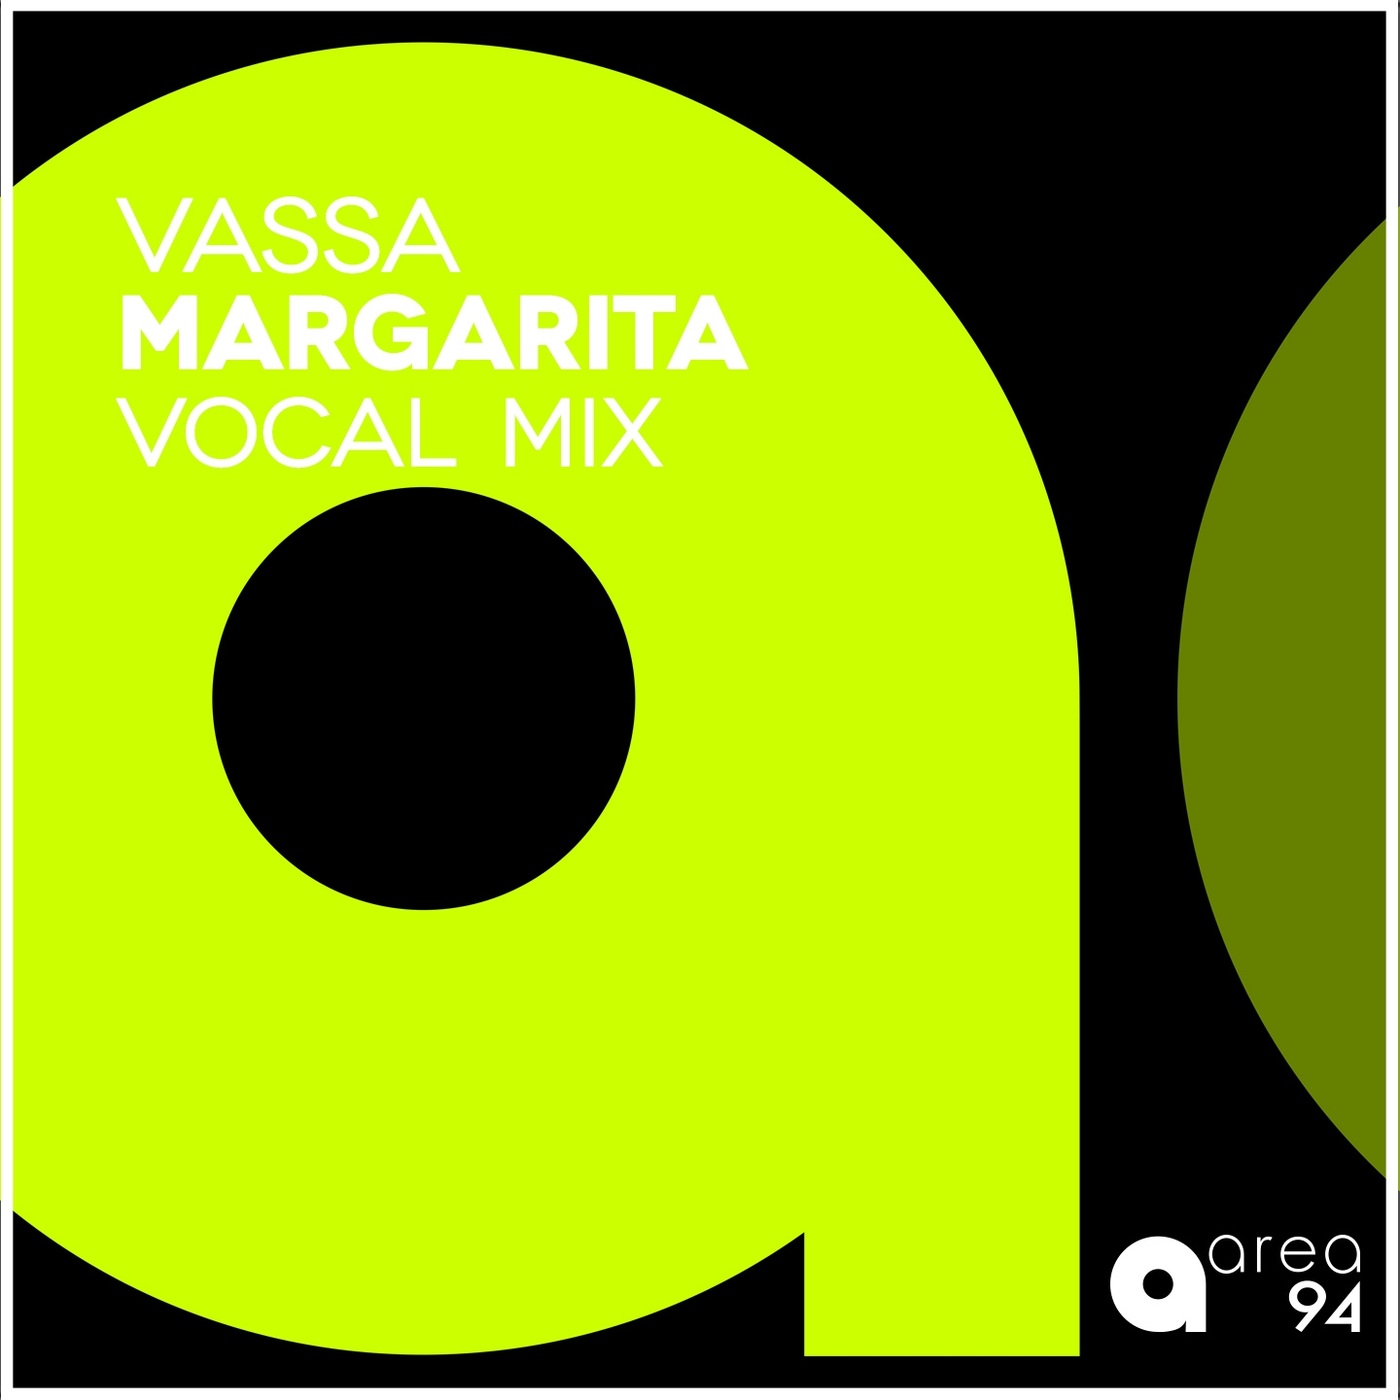 VASSA - Margarita (Vocal Mix) / Area 94